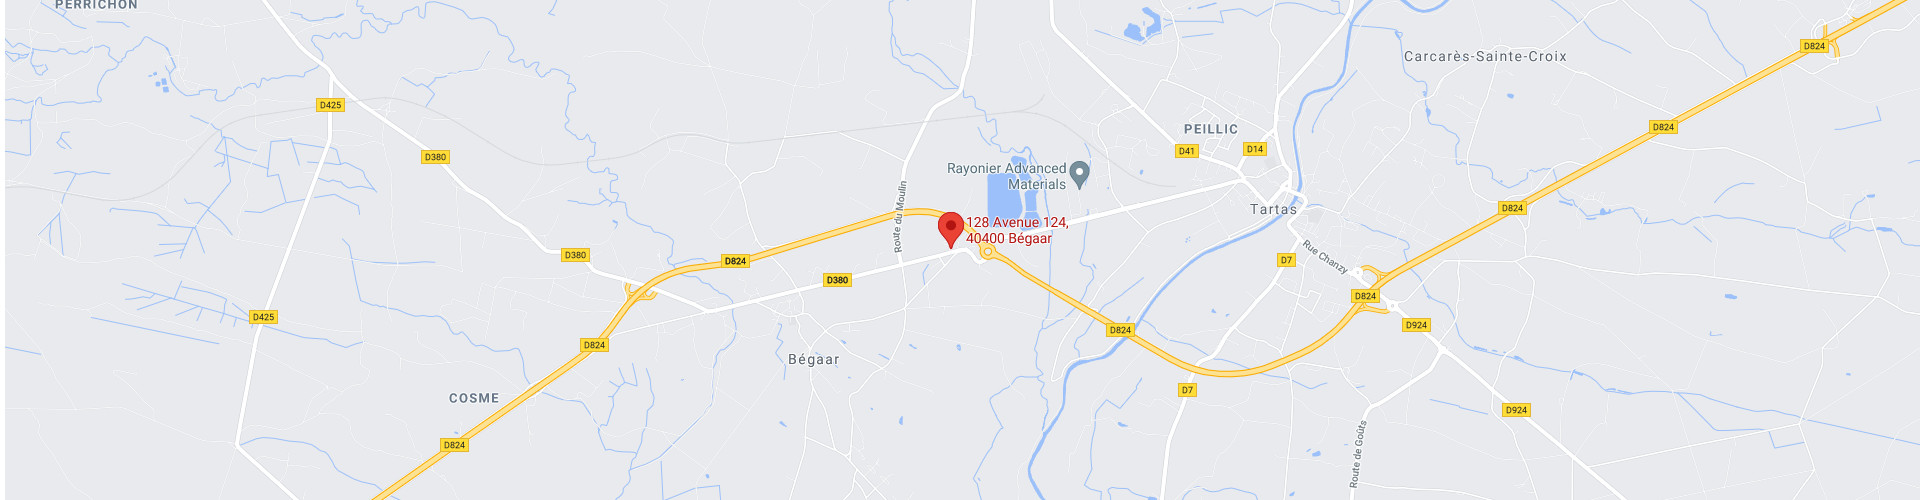 Cartographie Google Maps - SARL D. LABEYRIE, 128 avenue 124, 40400 Bégaar (Landes), France